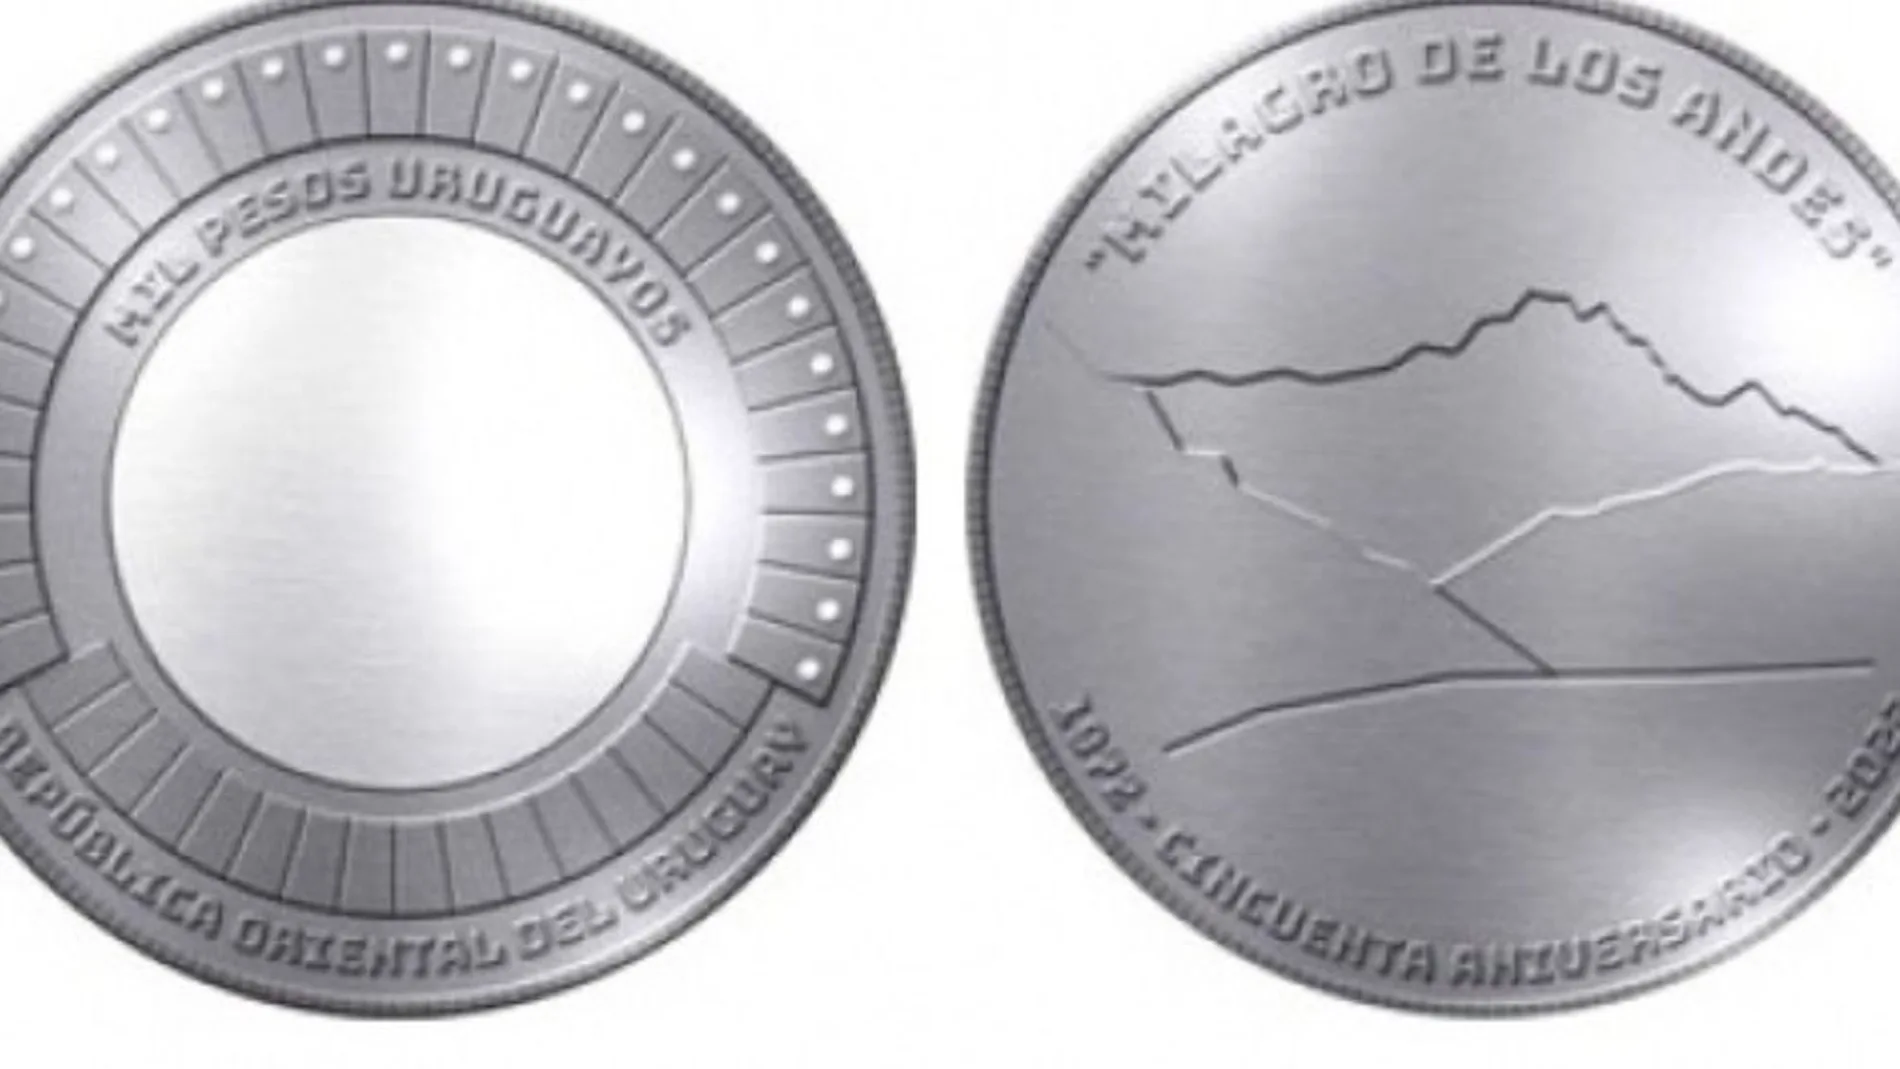 Así será la nueva moneda uruguaya que inmortalizará el "Milagro de los Andes" en monedas conmemorativas